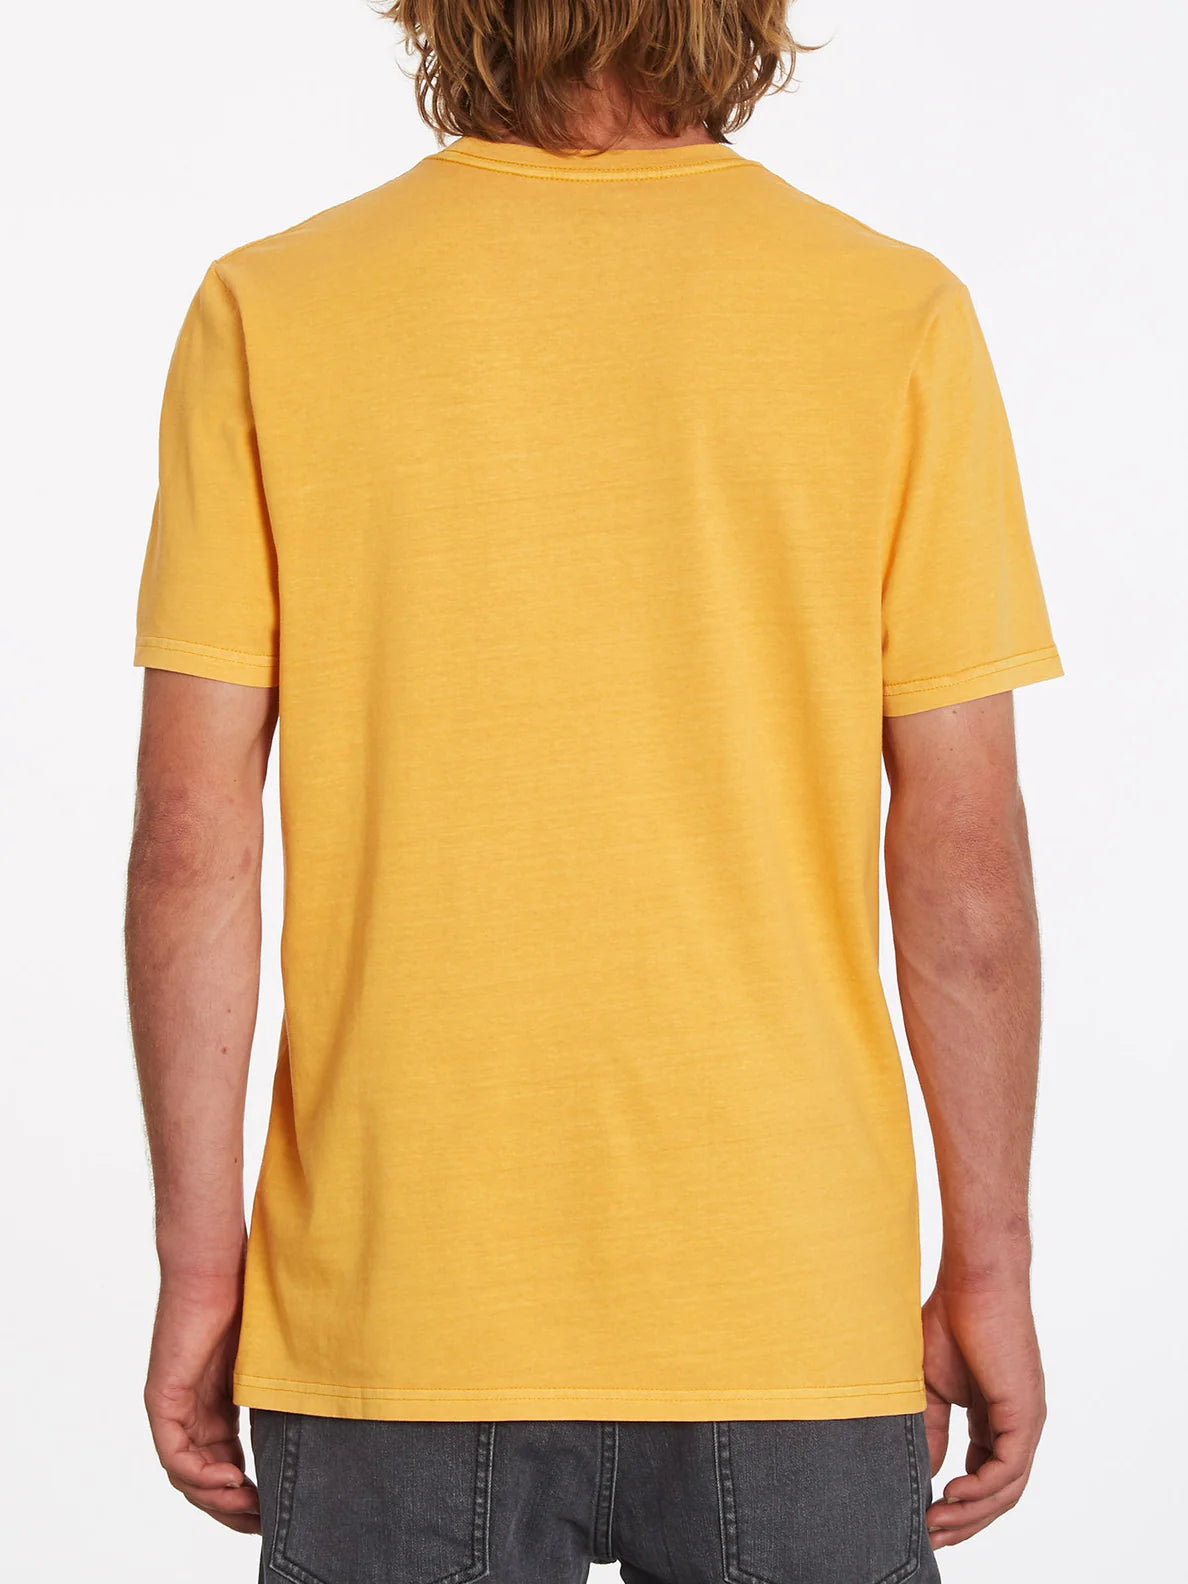 Camiseta Volcom Burnher Sunburst | Camisetas de hombre | Camisetas manga corta de hombre | Volcom Shop | surfdevils.com